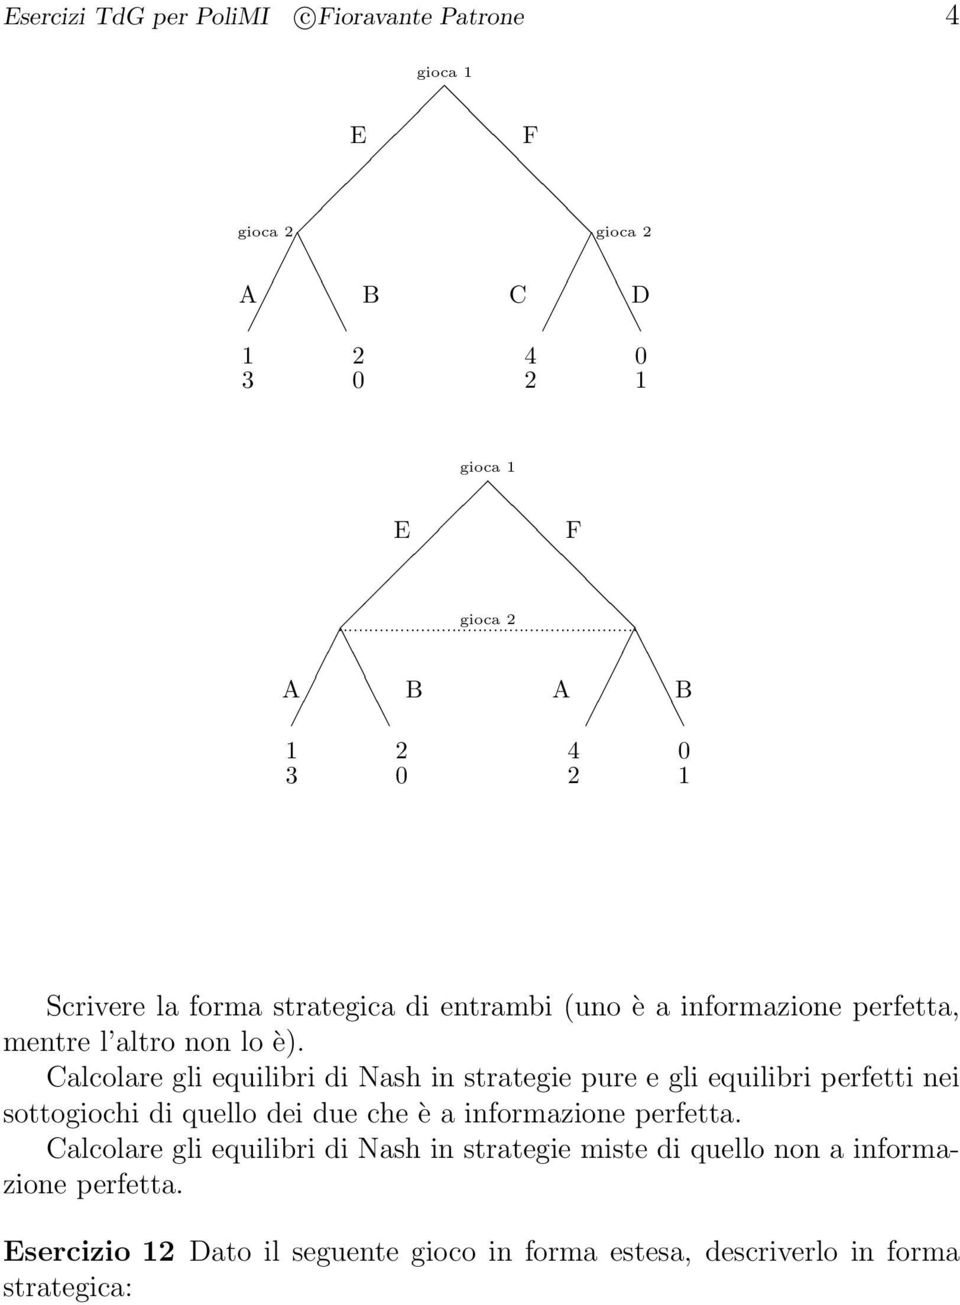 Calcolare gli equilibri di Nash in strategie pure e gli equilibri perfetti nei sottogiochi di quello dei due che è a informazione